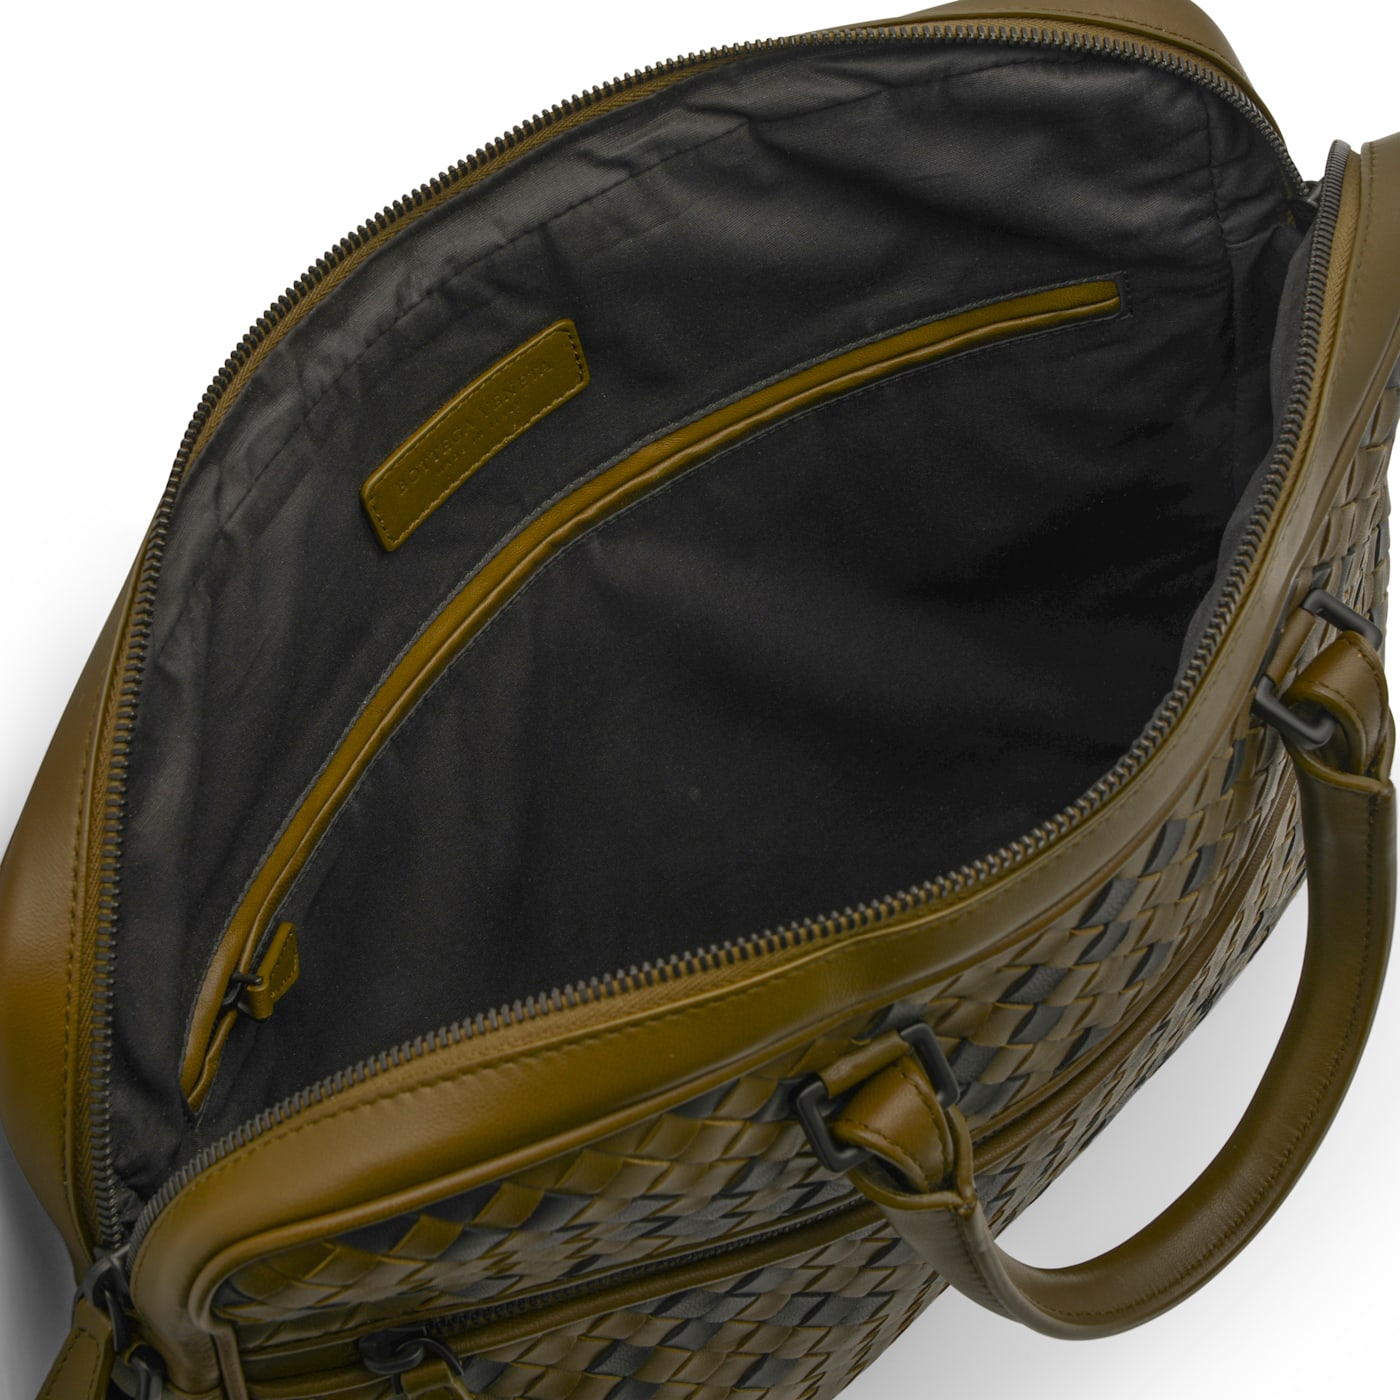 ShopSmart Leather Messenger Bag Men's Leather Bag Yellow Shoulder Bag